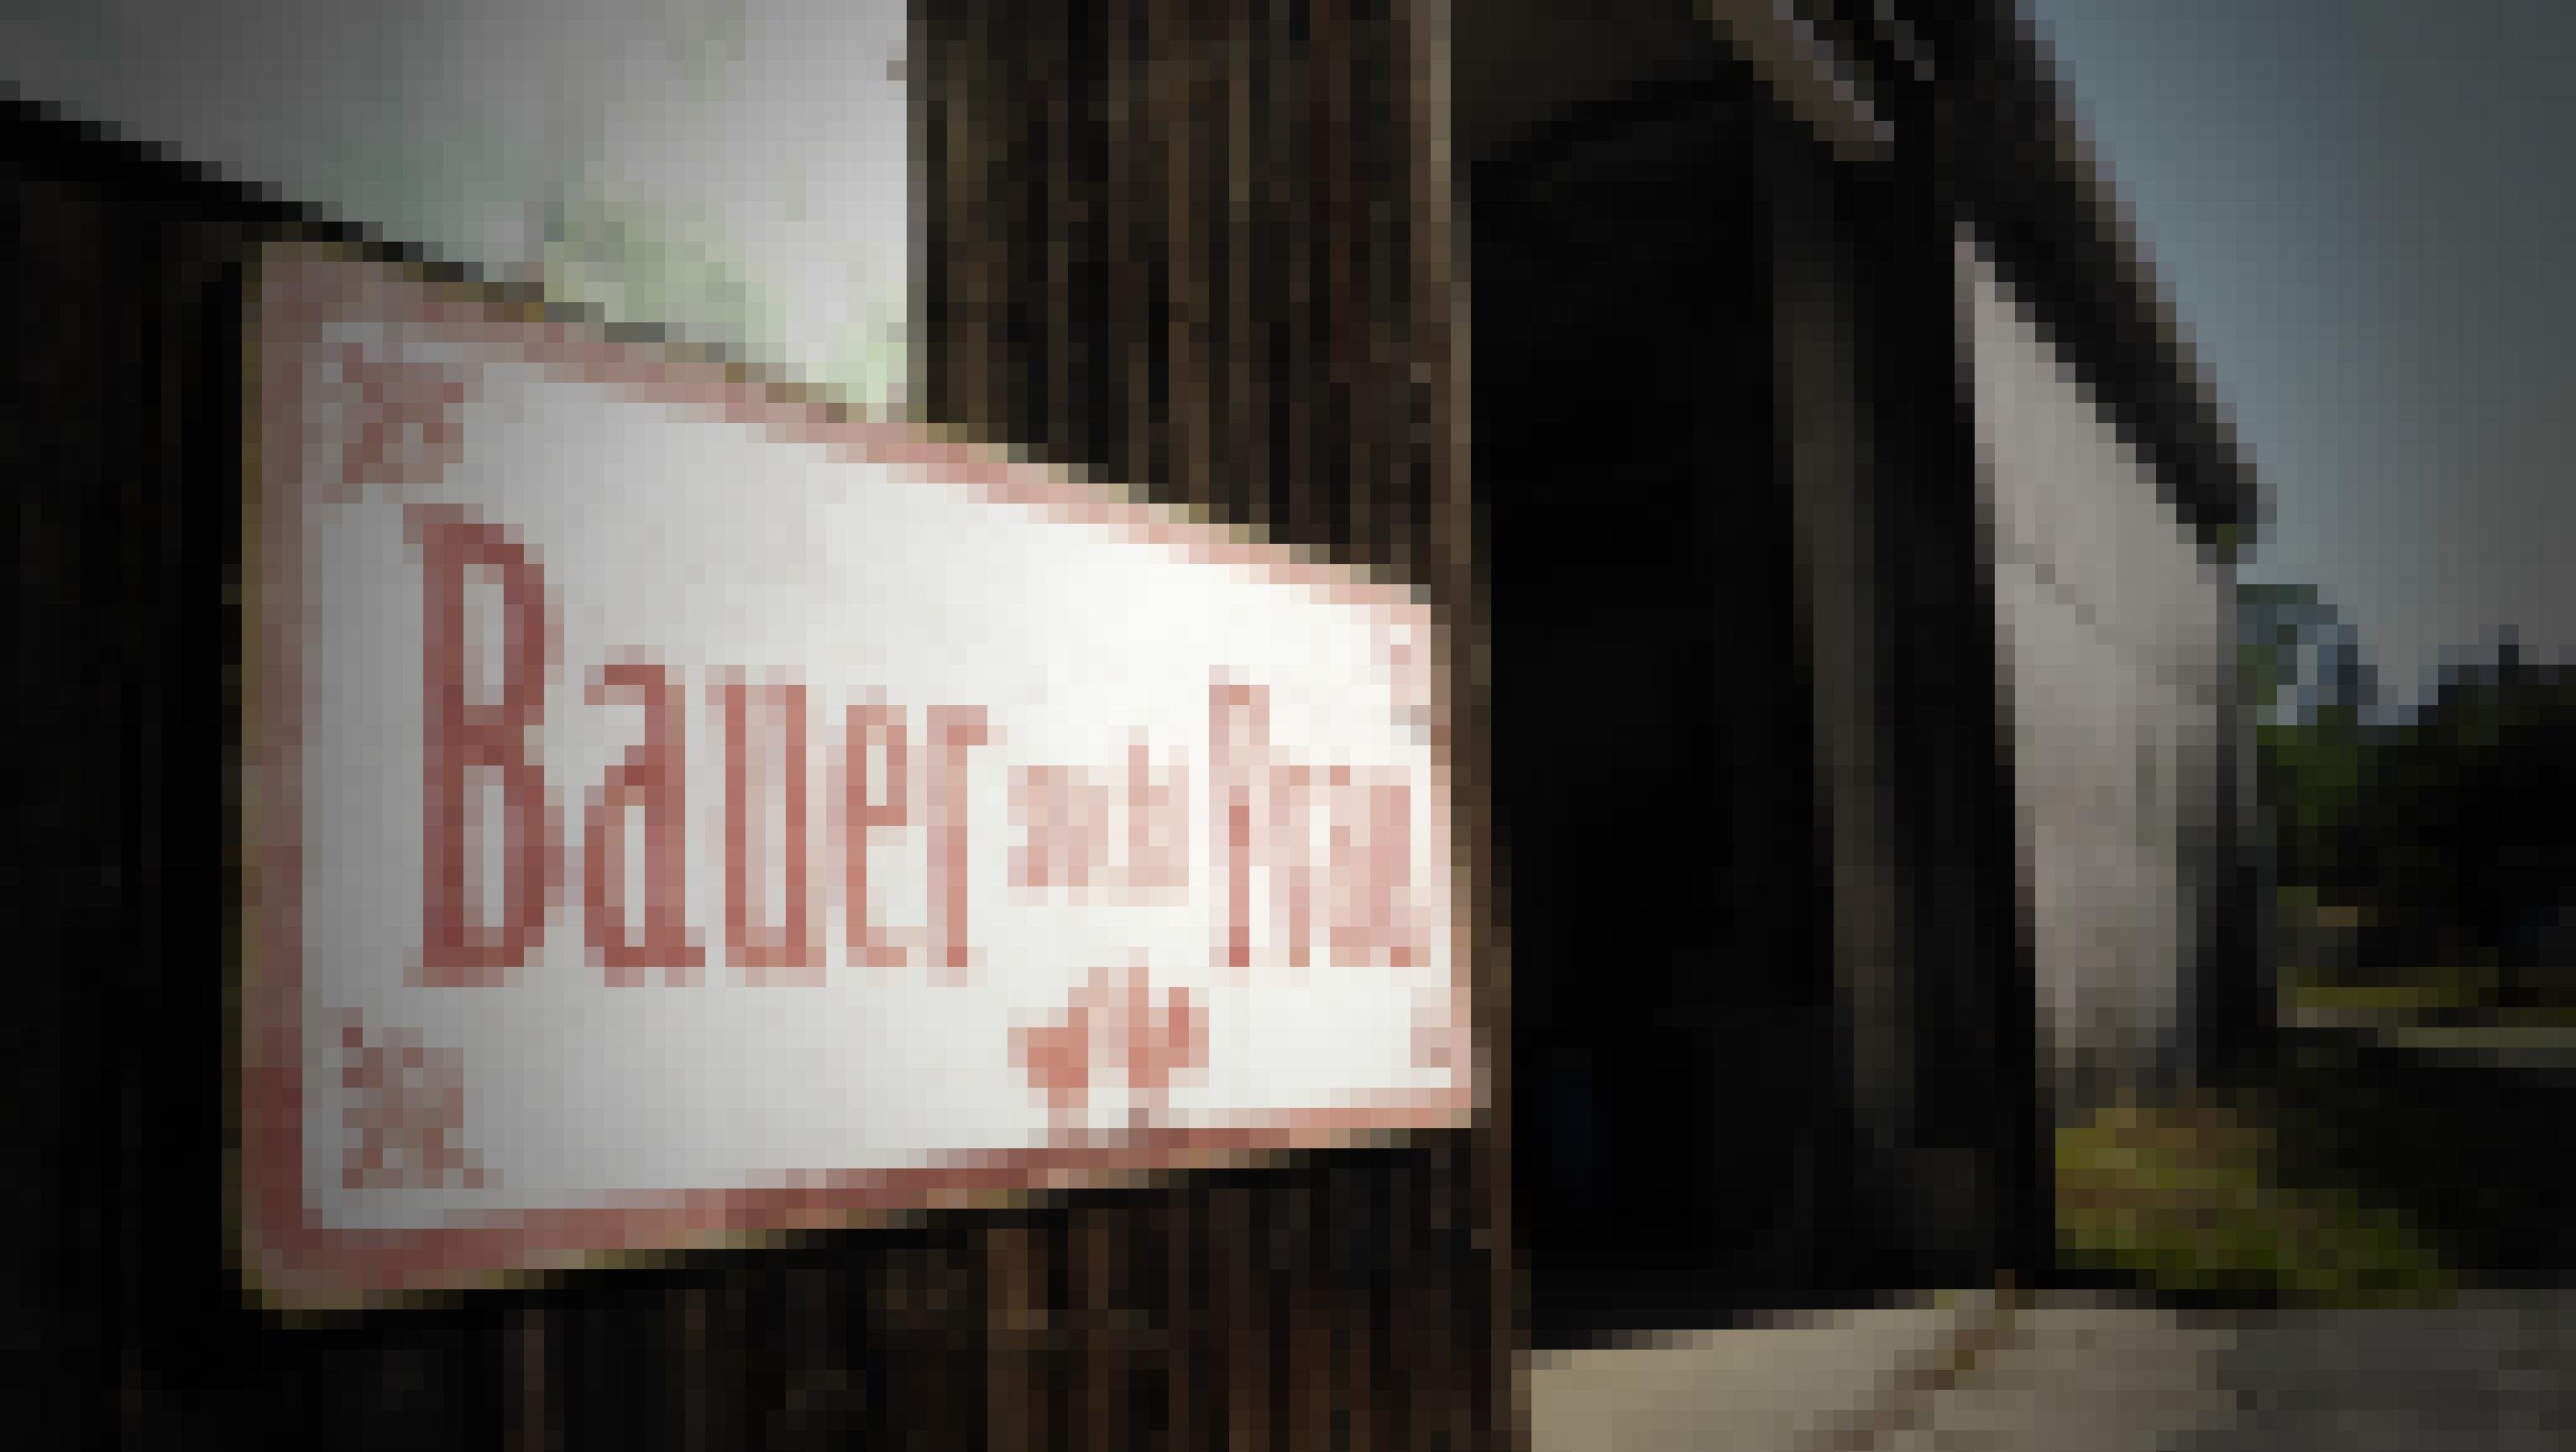 Rechts neben einer riesigen Scheuneneinfahrt prangt an der Holzwand das Schild „Bauer sucht Frau“ – rot auf weißem Grund.